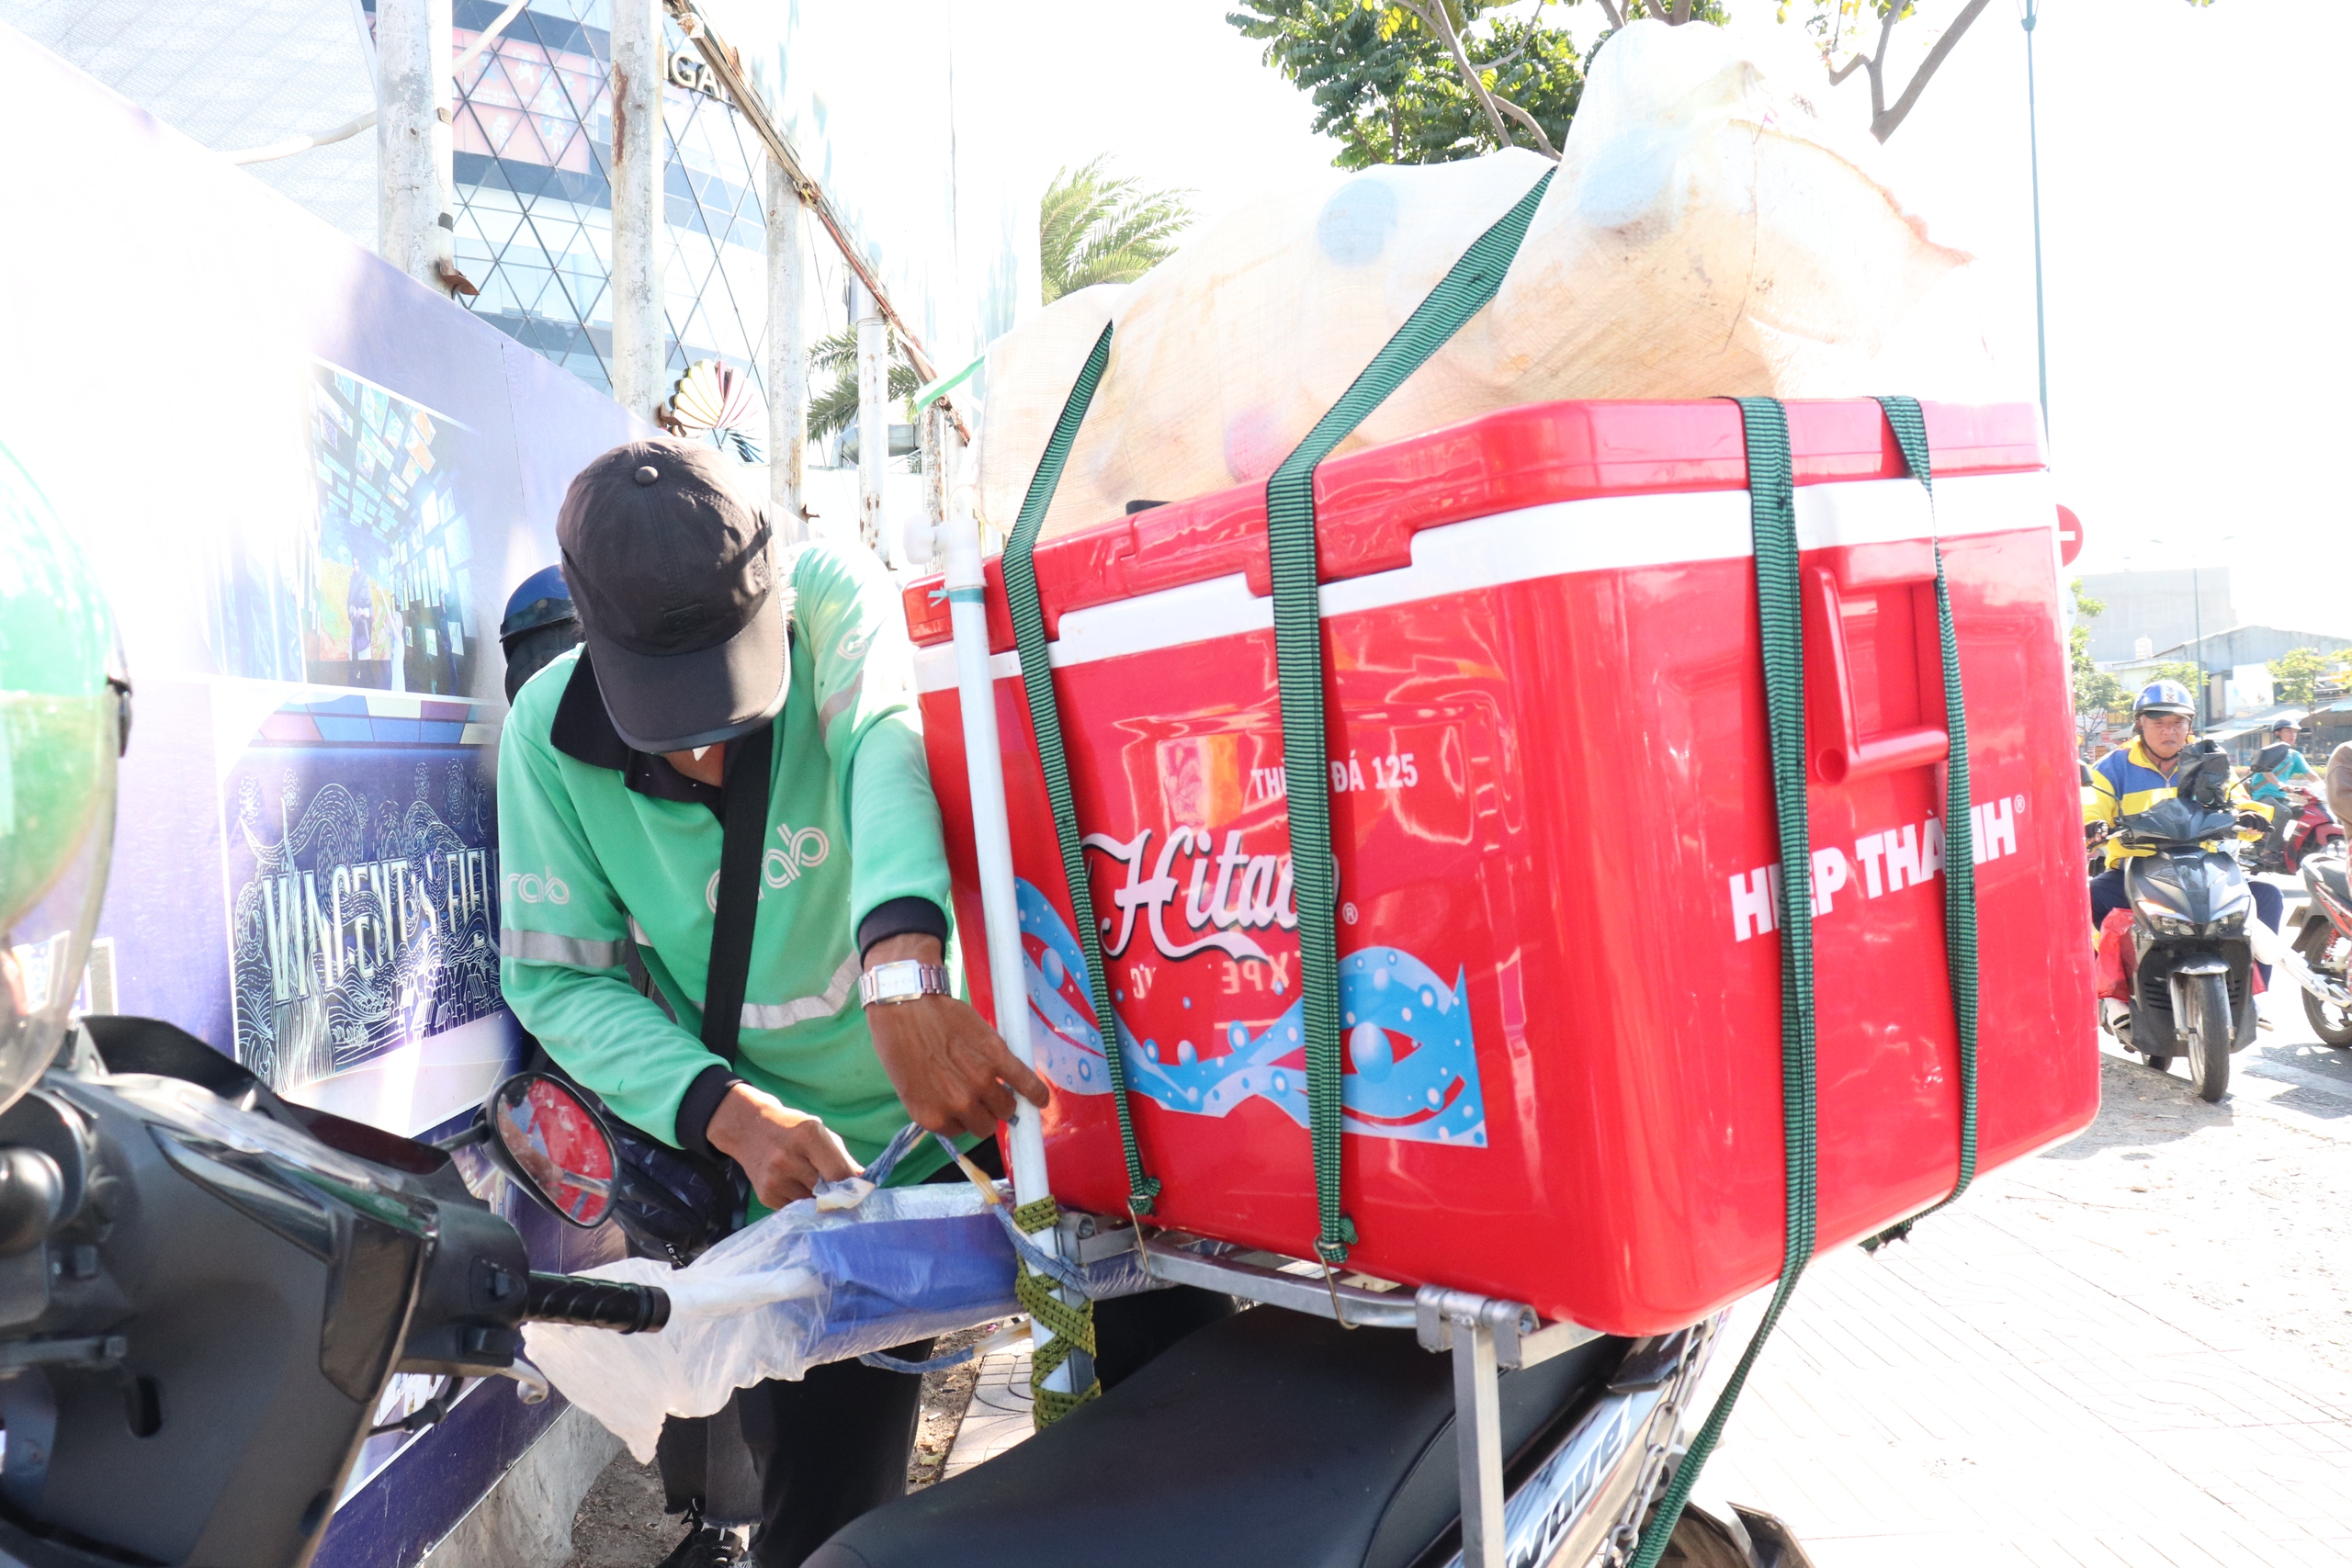 Anh Trần Minh Tuấn tranh thủ buổi trưa tạm ngừng chạy xe để tránh nóng và bán thêm nước giải khát.